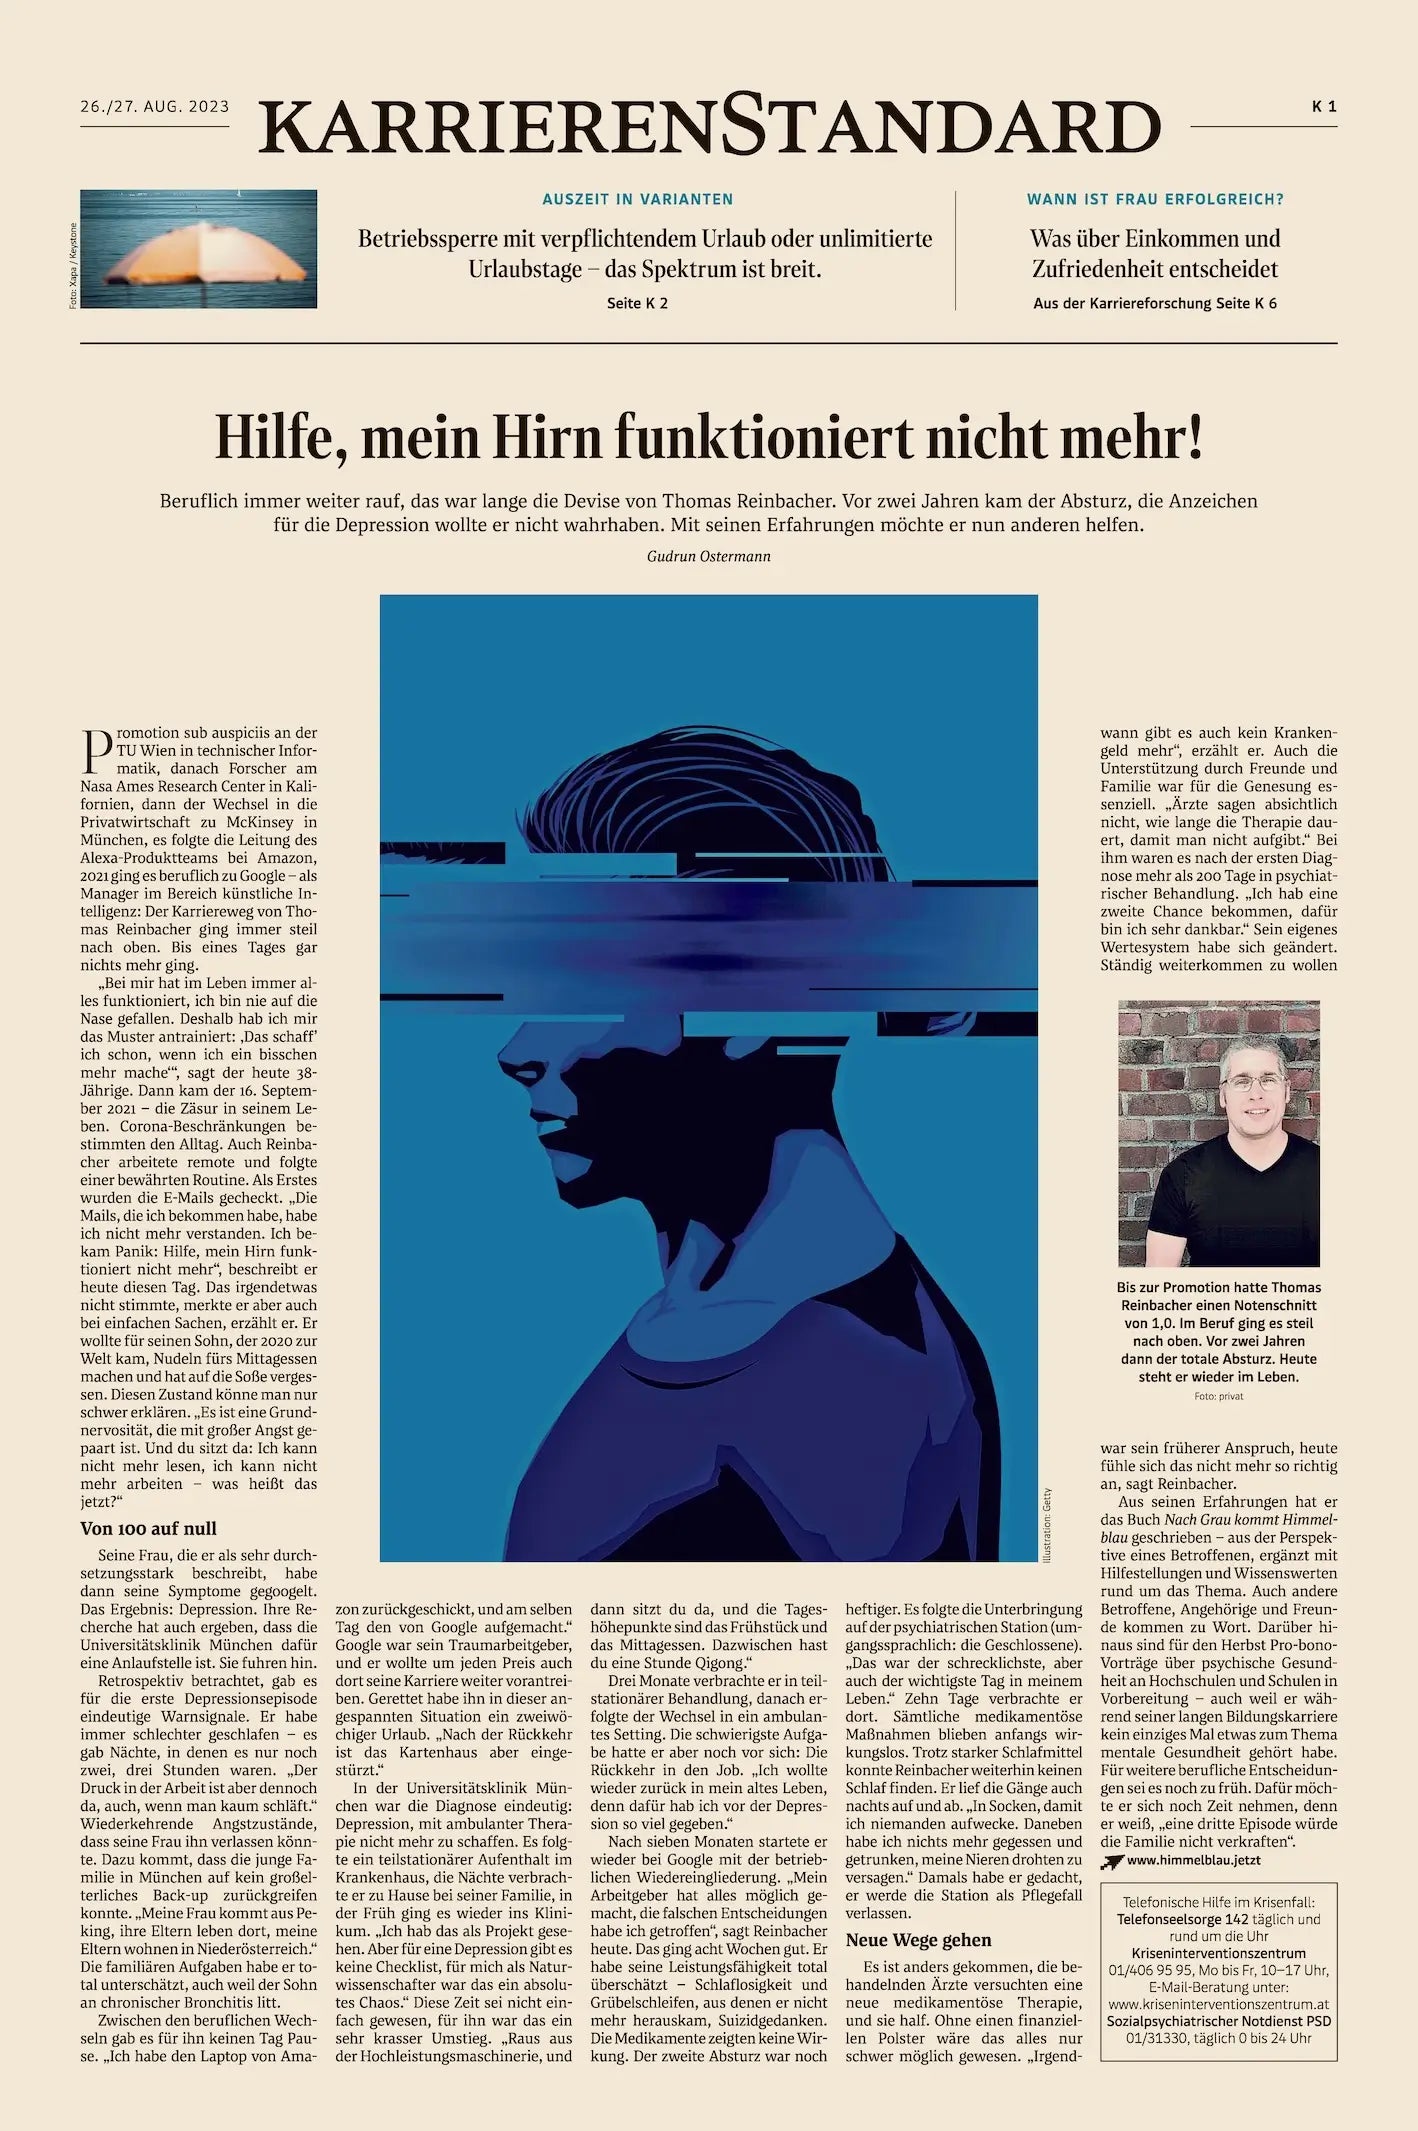 Thomas Reinbacher von »Nach Grau kommt Himmelblau« in der Zeitung DerStandard (KarrierenStandard)